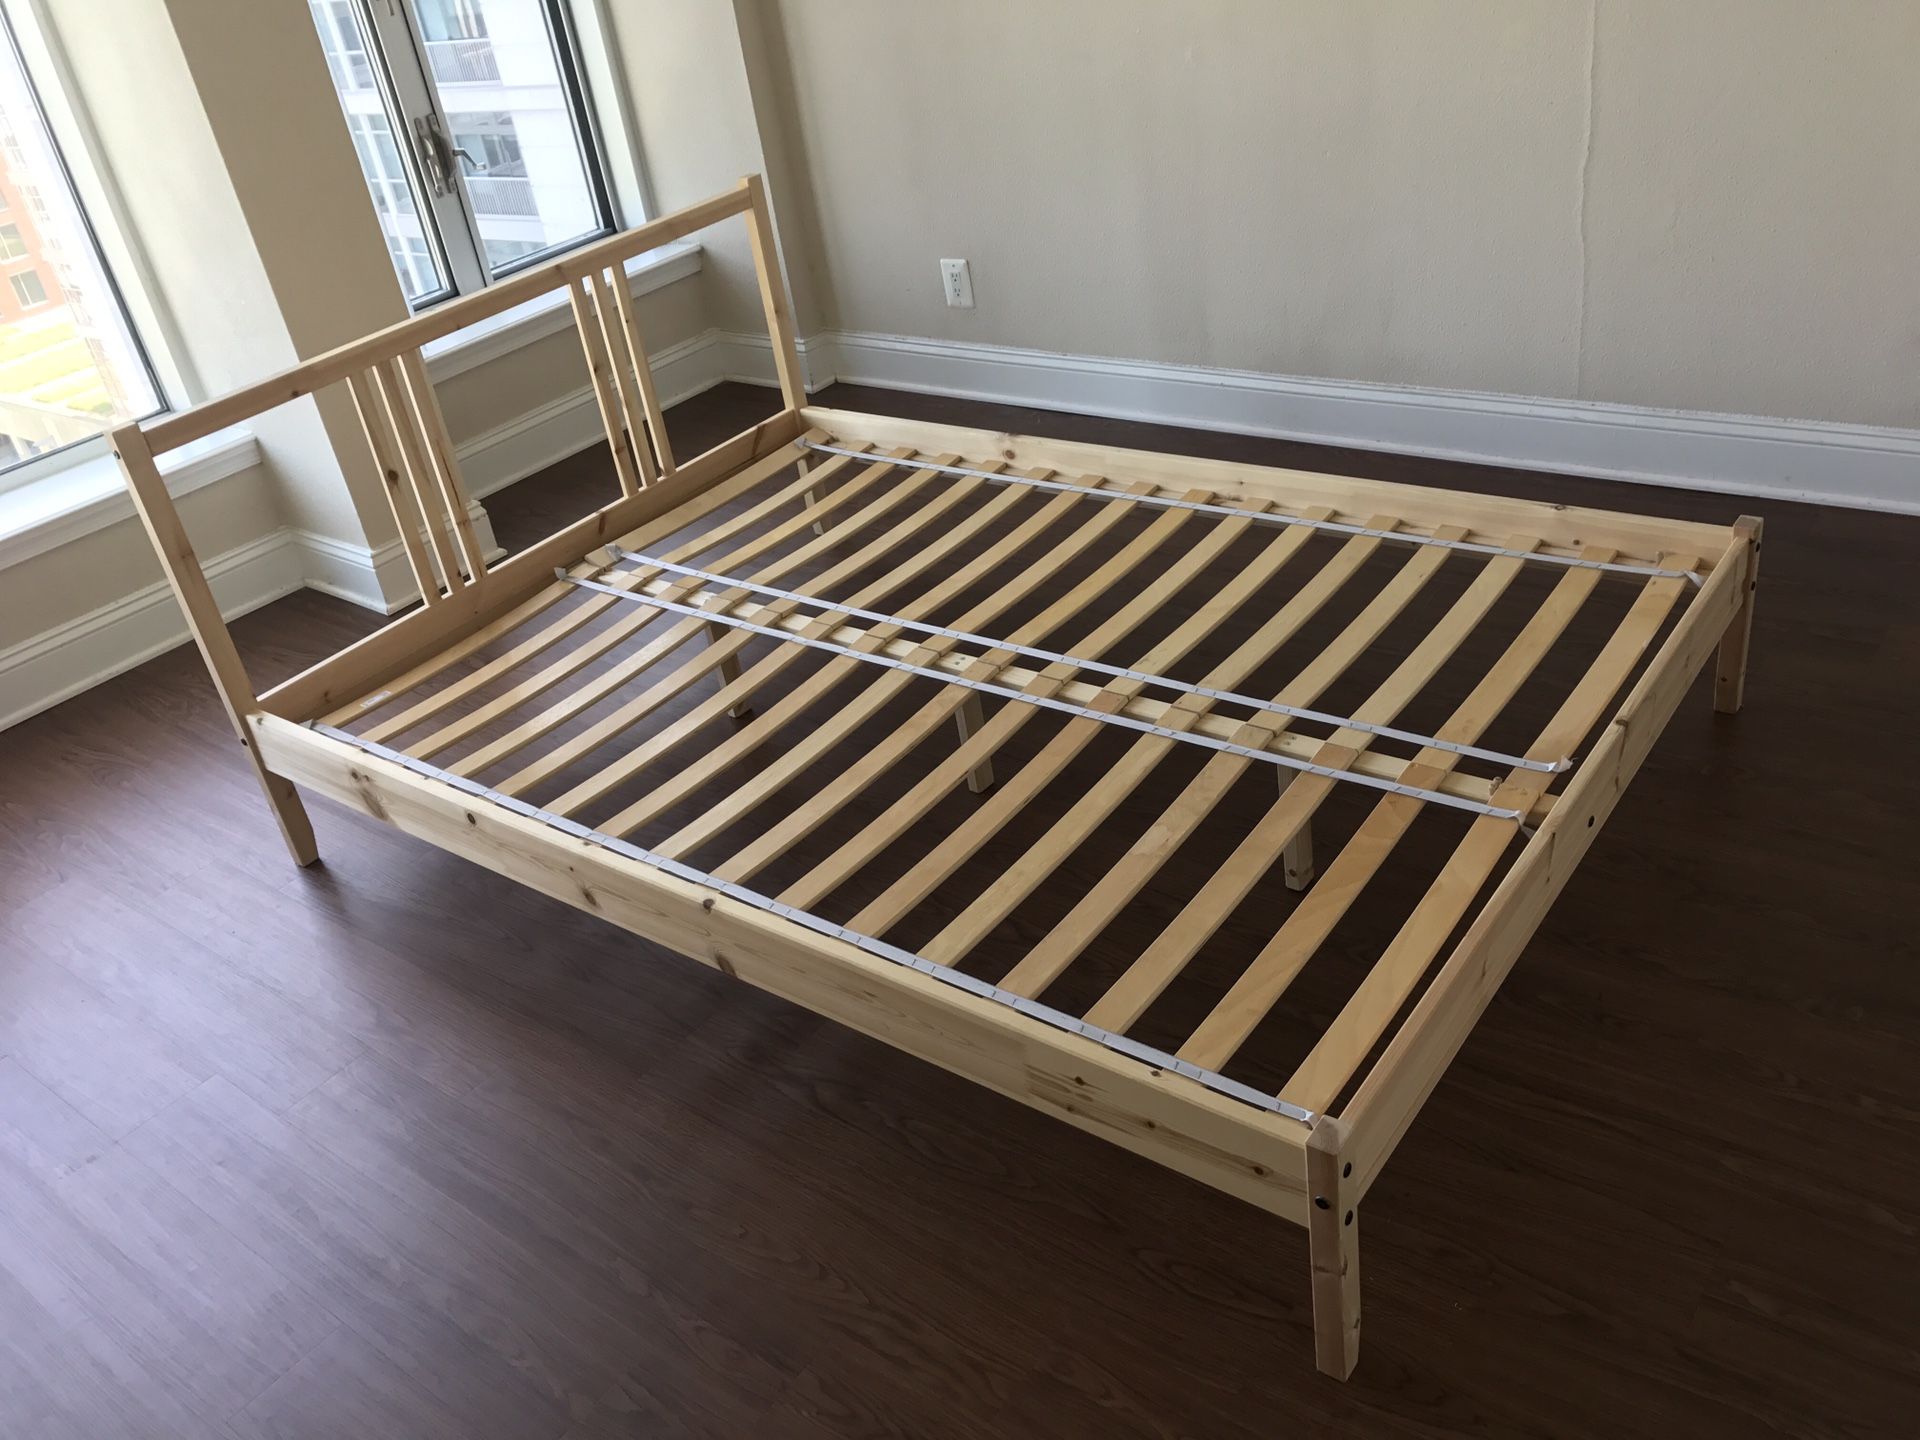 BED FRAME full size $50